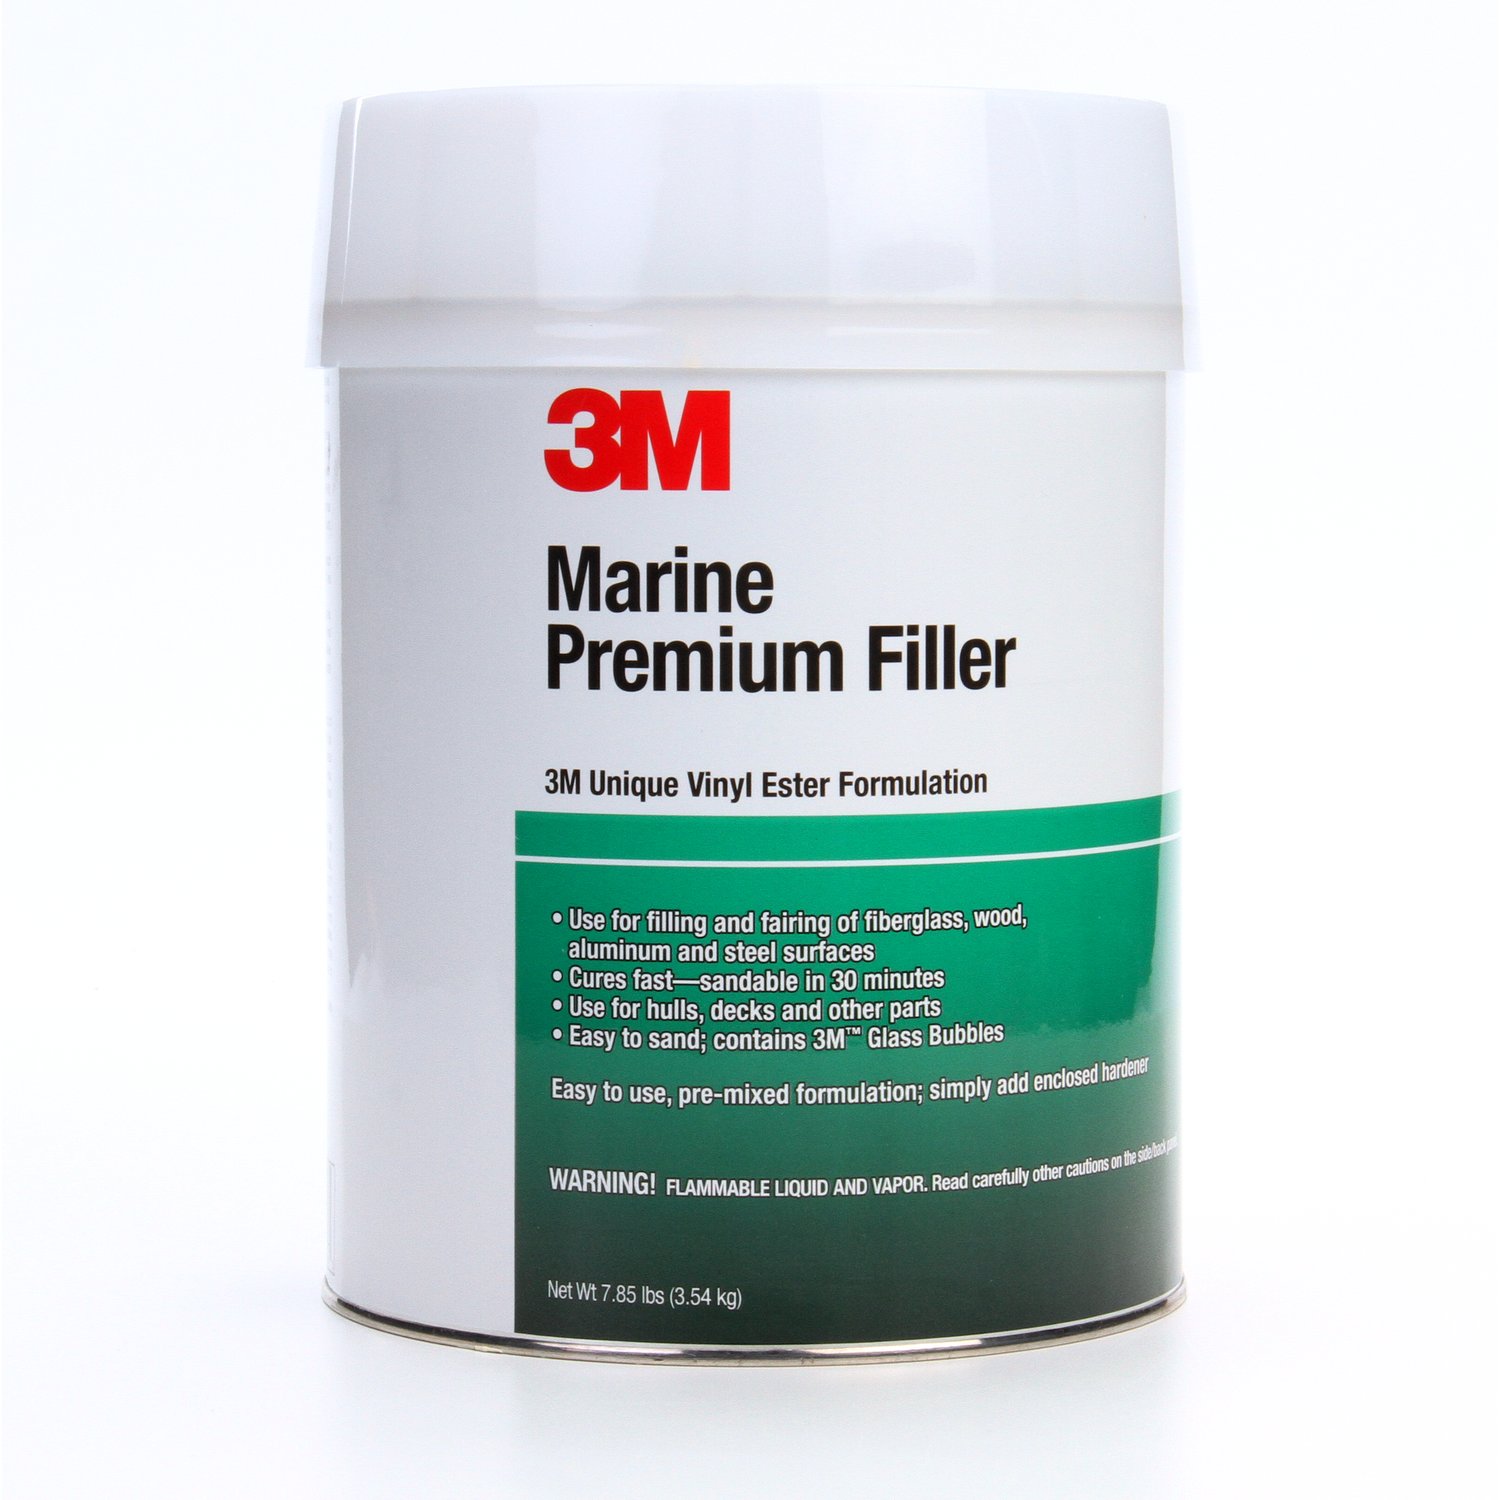 7000000604 - 3M Marine Premium Filler, 46006, 1 gal, 4 per case